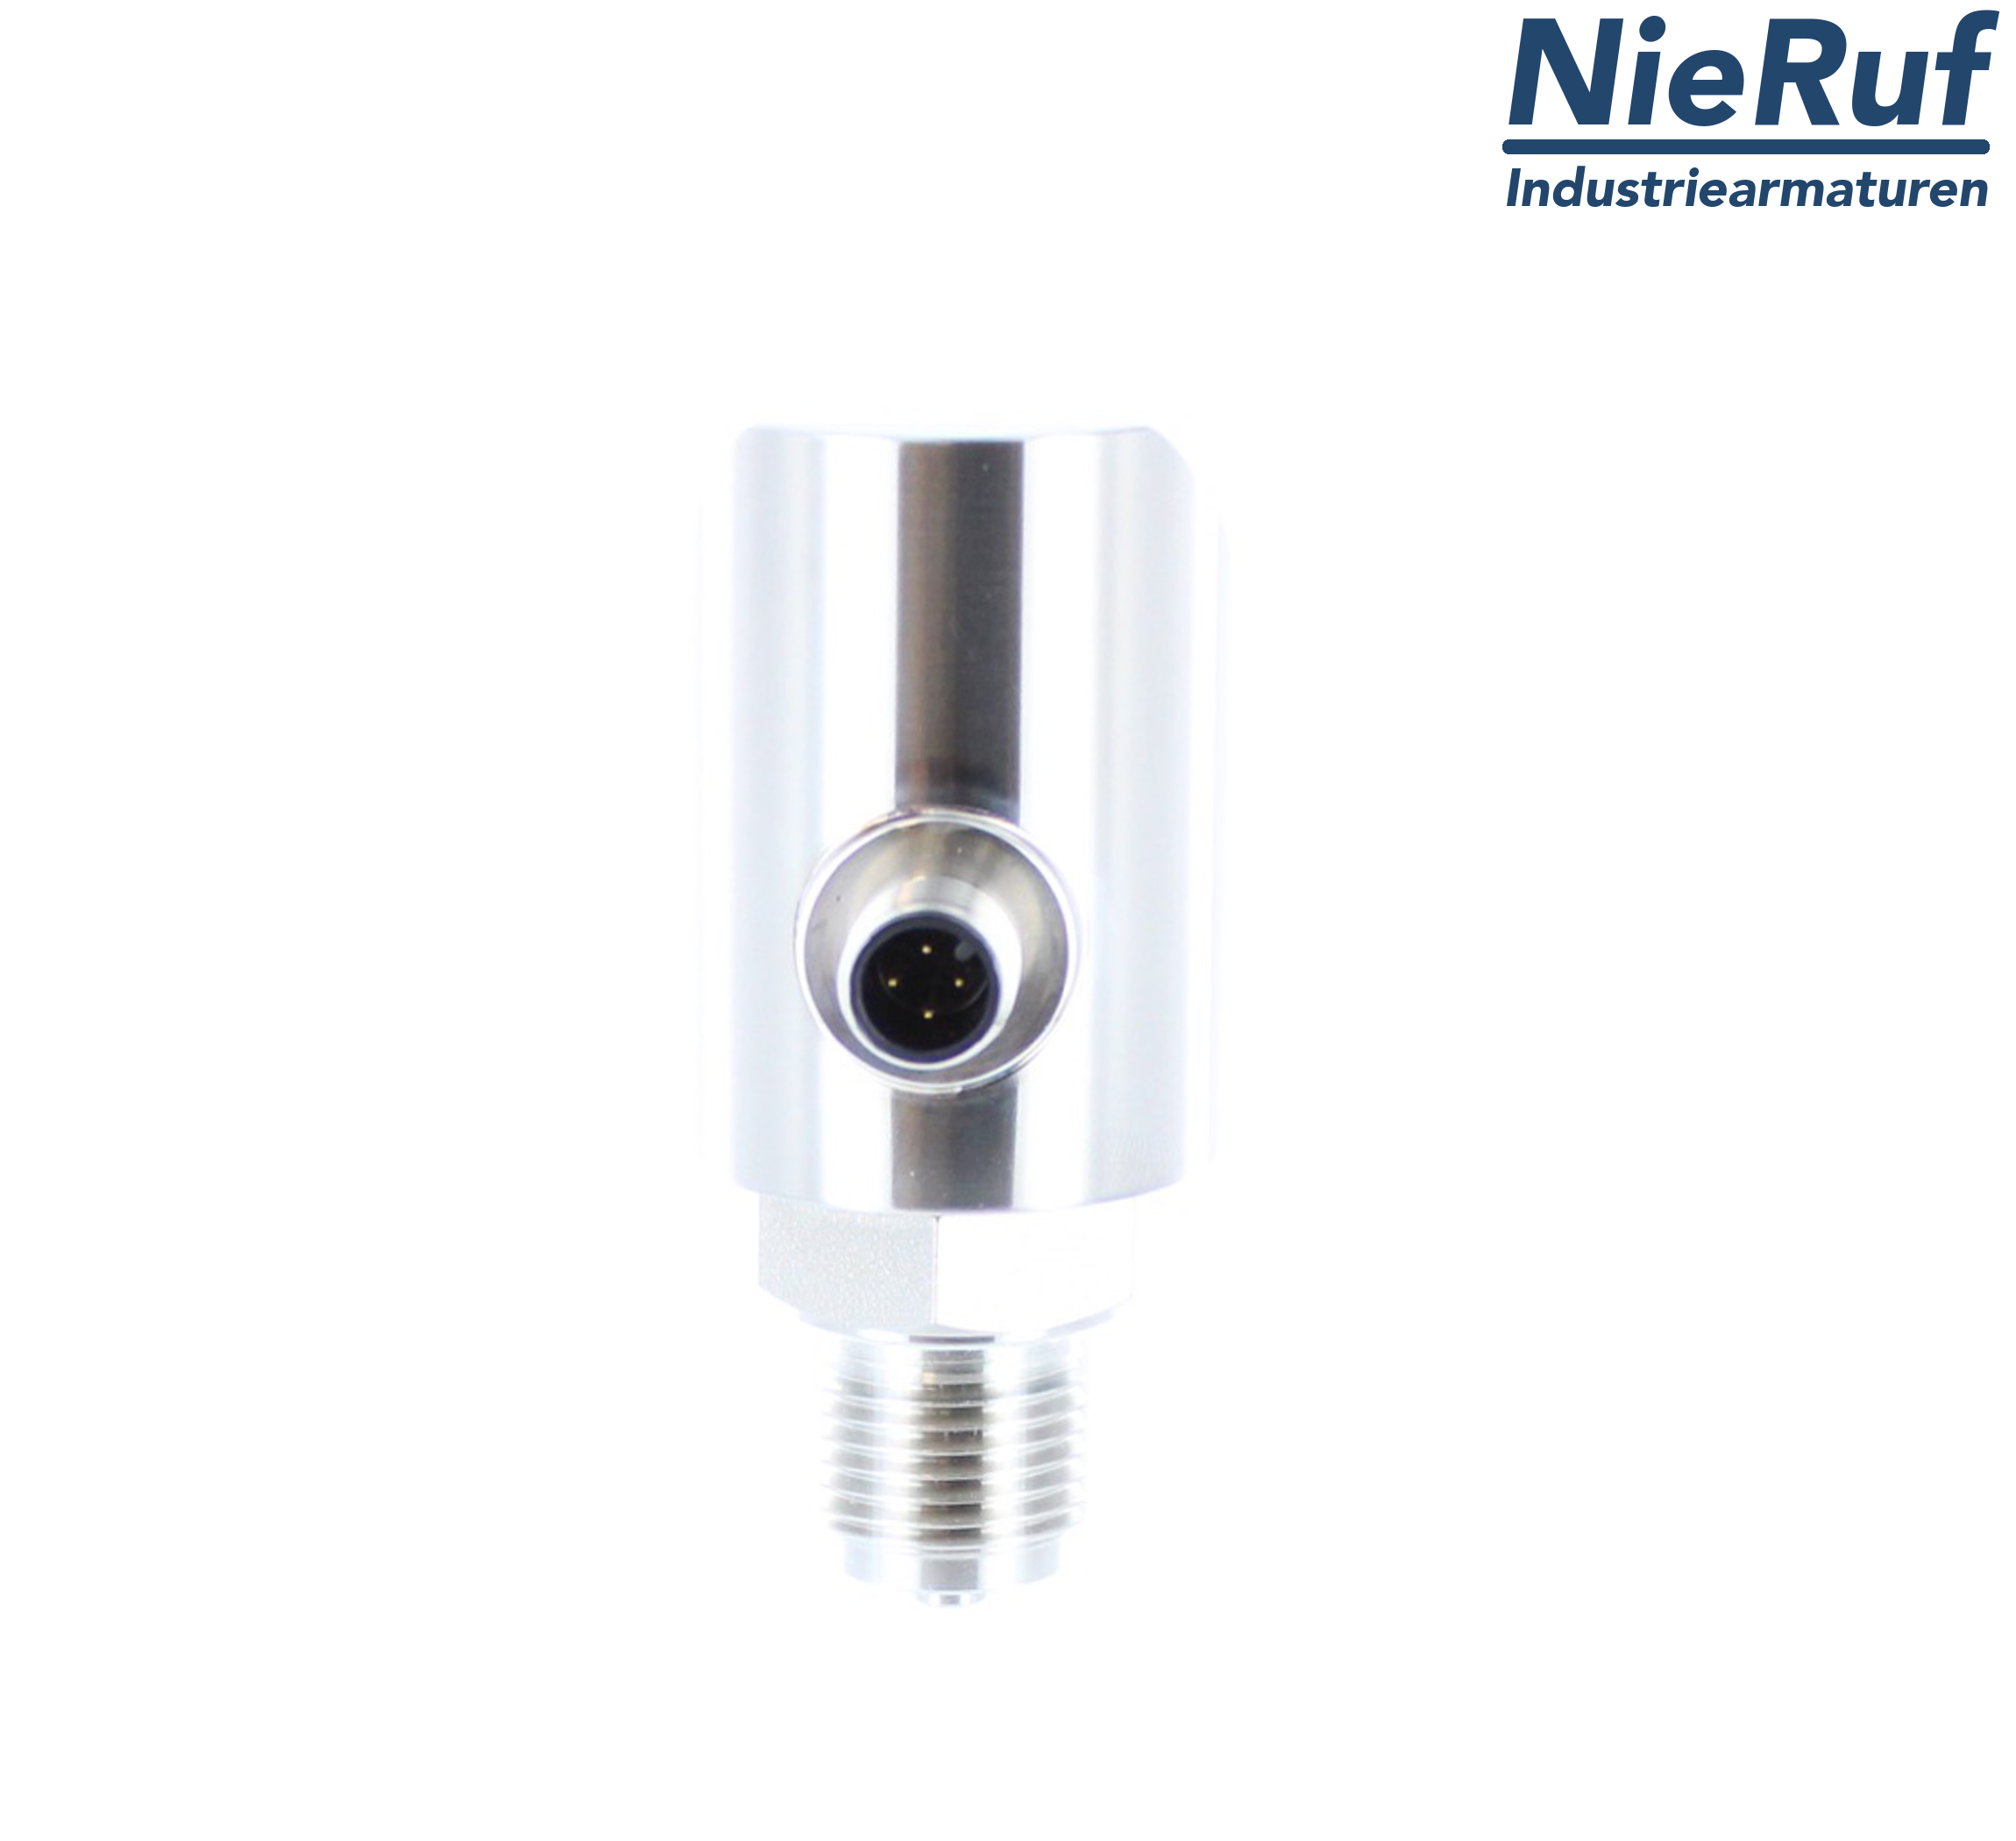 digital pressure sensor G 1/2" B IB 4-wire: 1xPNP, 1x4 - 20mA, Desina FPM 0,0 - 250,0 bar